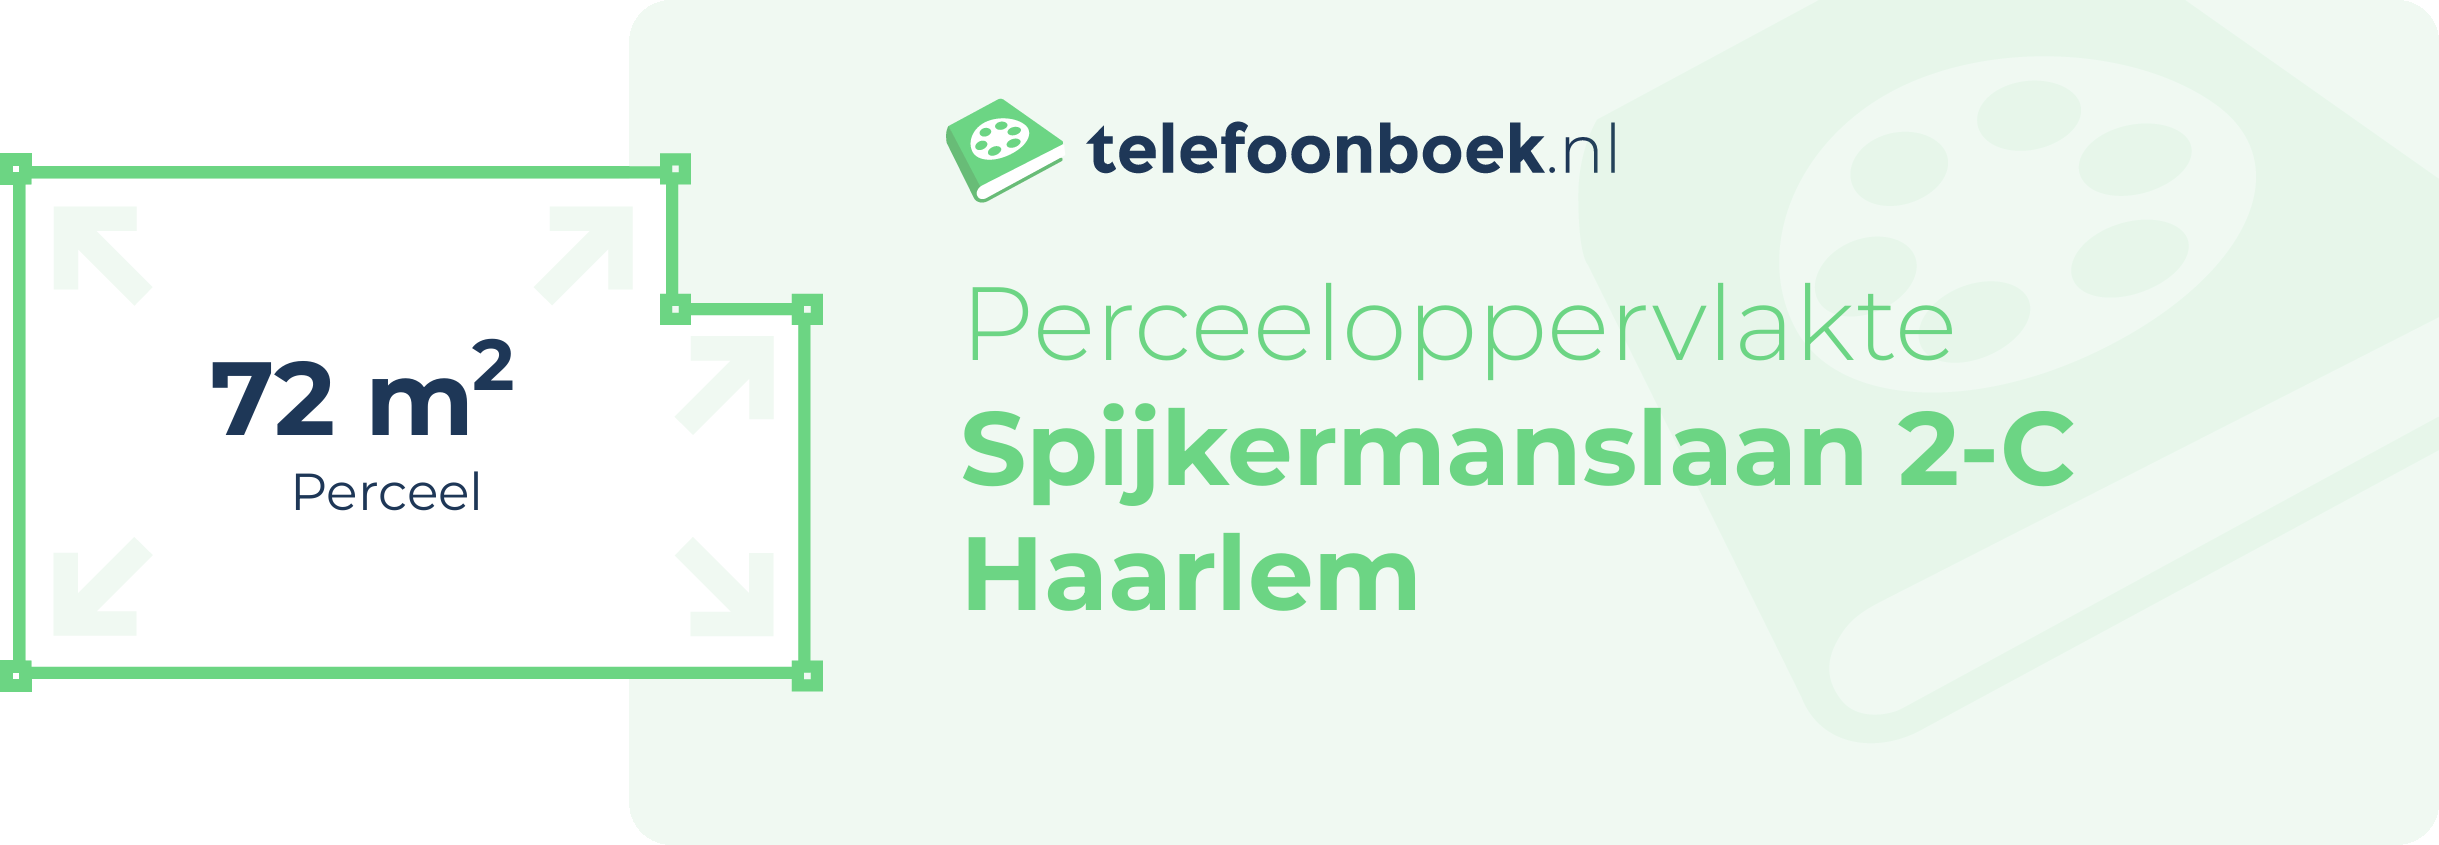 Perceeloppervlakte Spijkermanslaan 2-C Haarlem